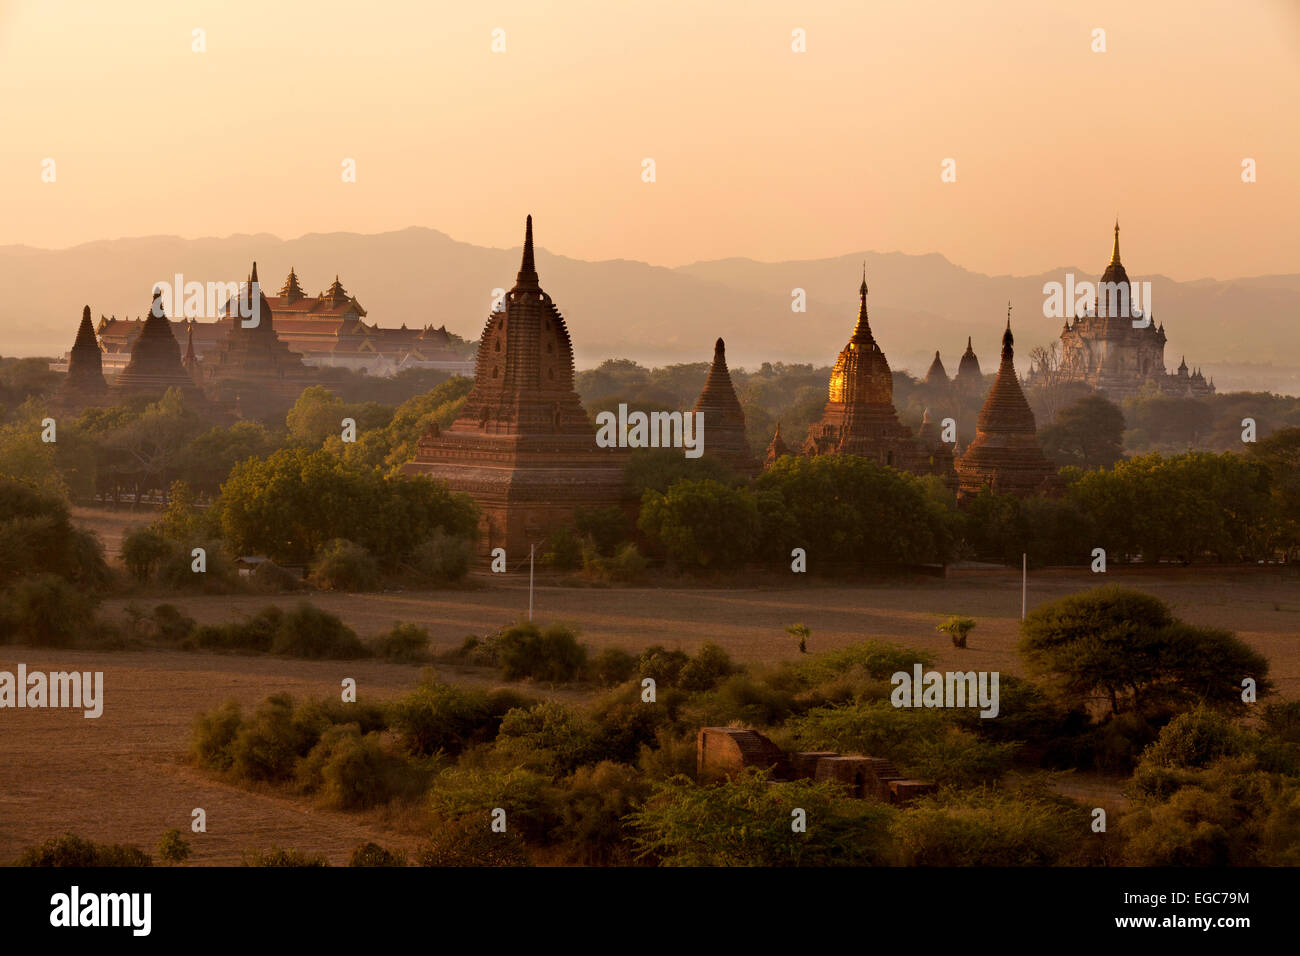 Templos de bagan durante la puesta de sol, paisaje Birmano, Birmania (Myanmar), Asia Foto de stock